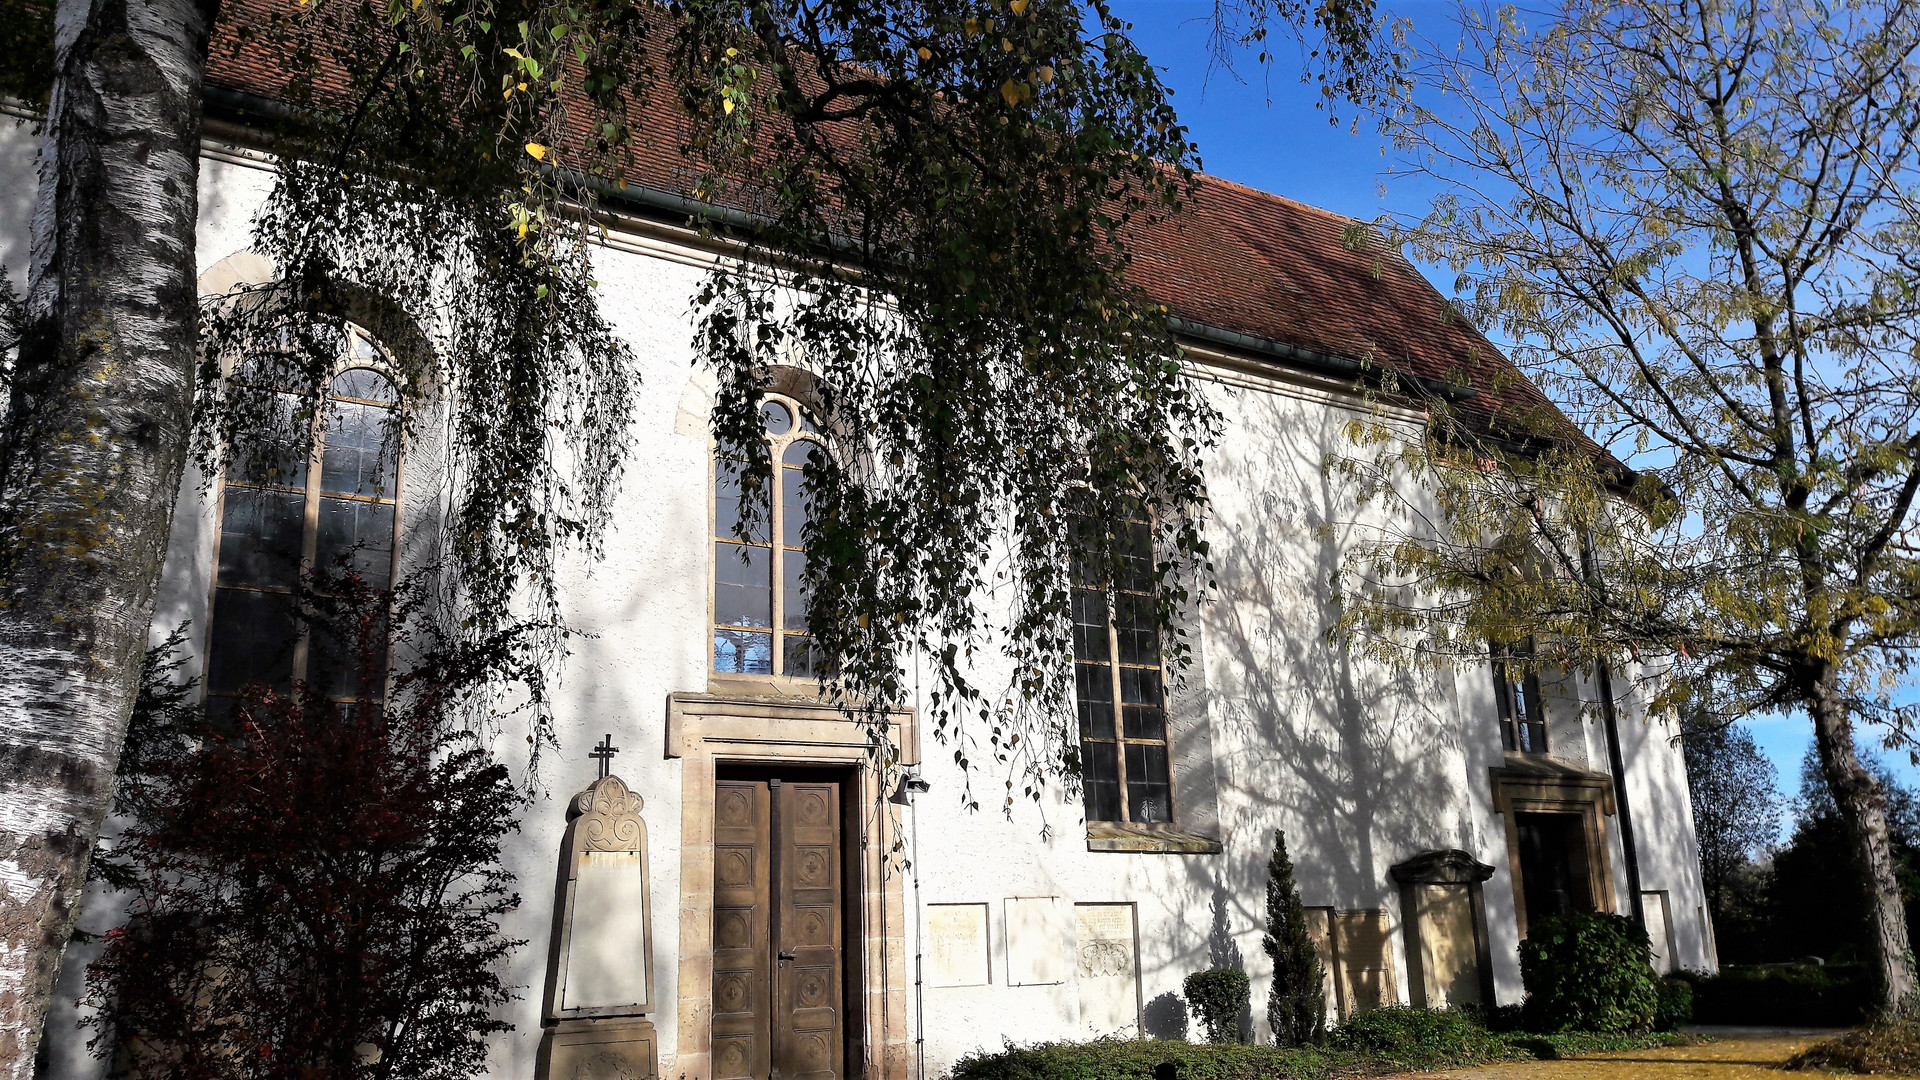  22.10.2019 Architektonische Details Friedhofskirche Dinkelsbühl